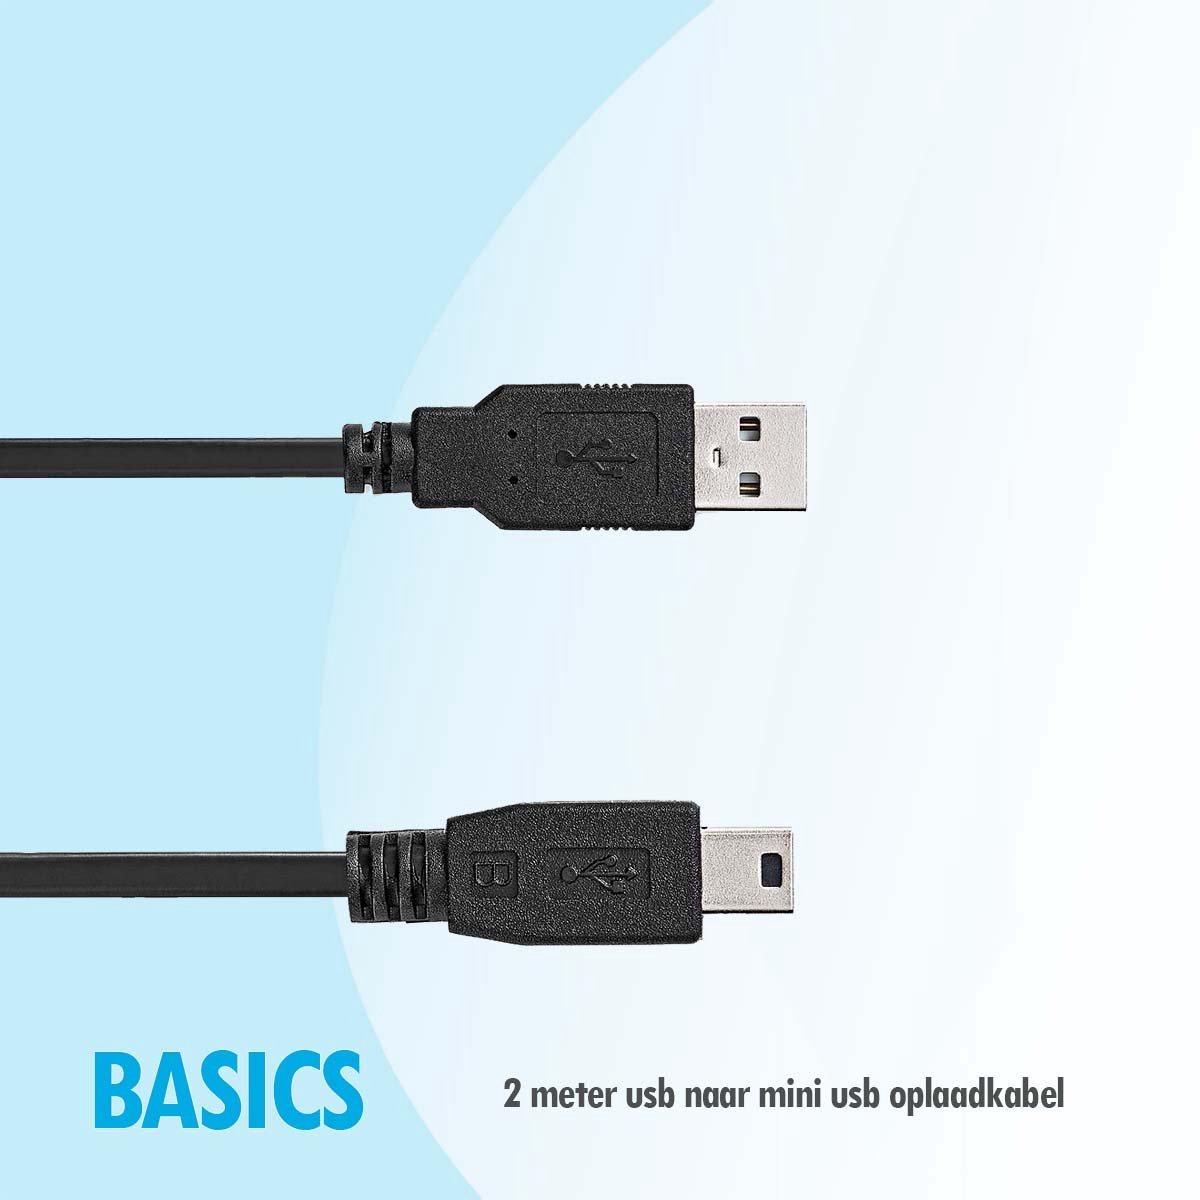 Basics 2 meter usb naar mini usb kabel Geschikt voor PS3 playstation controler & Go Pro Hero 3 4